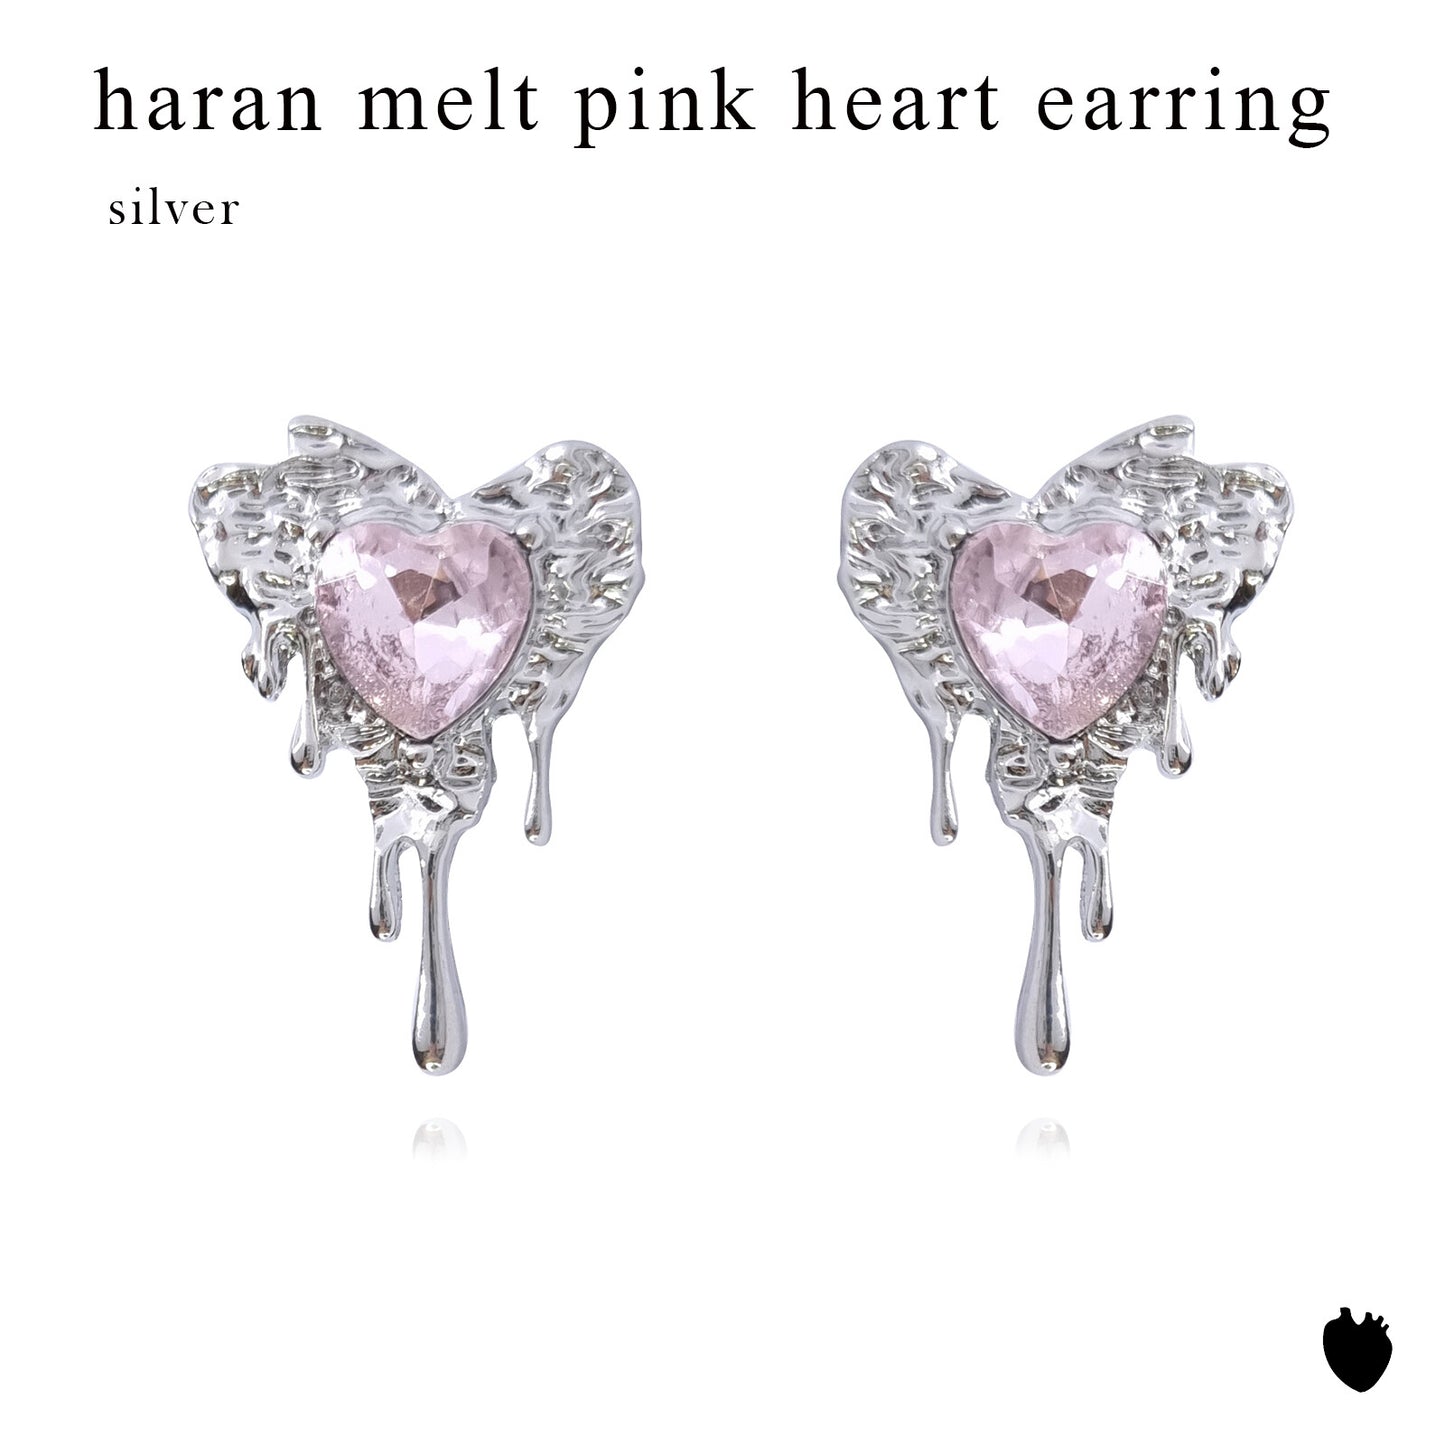 Melt Pink Heart Earrings